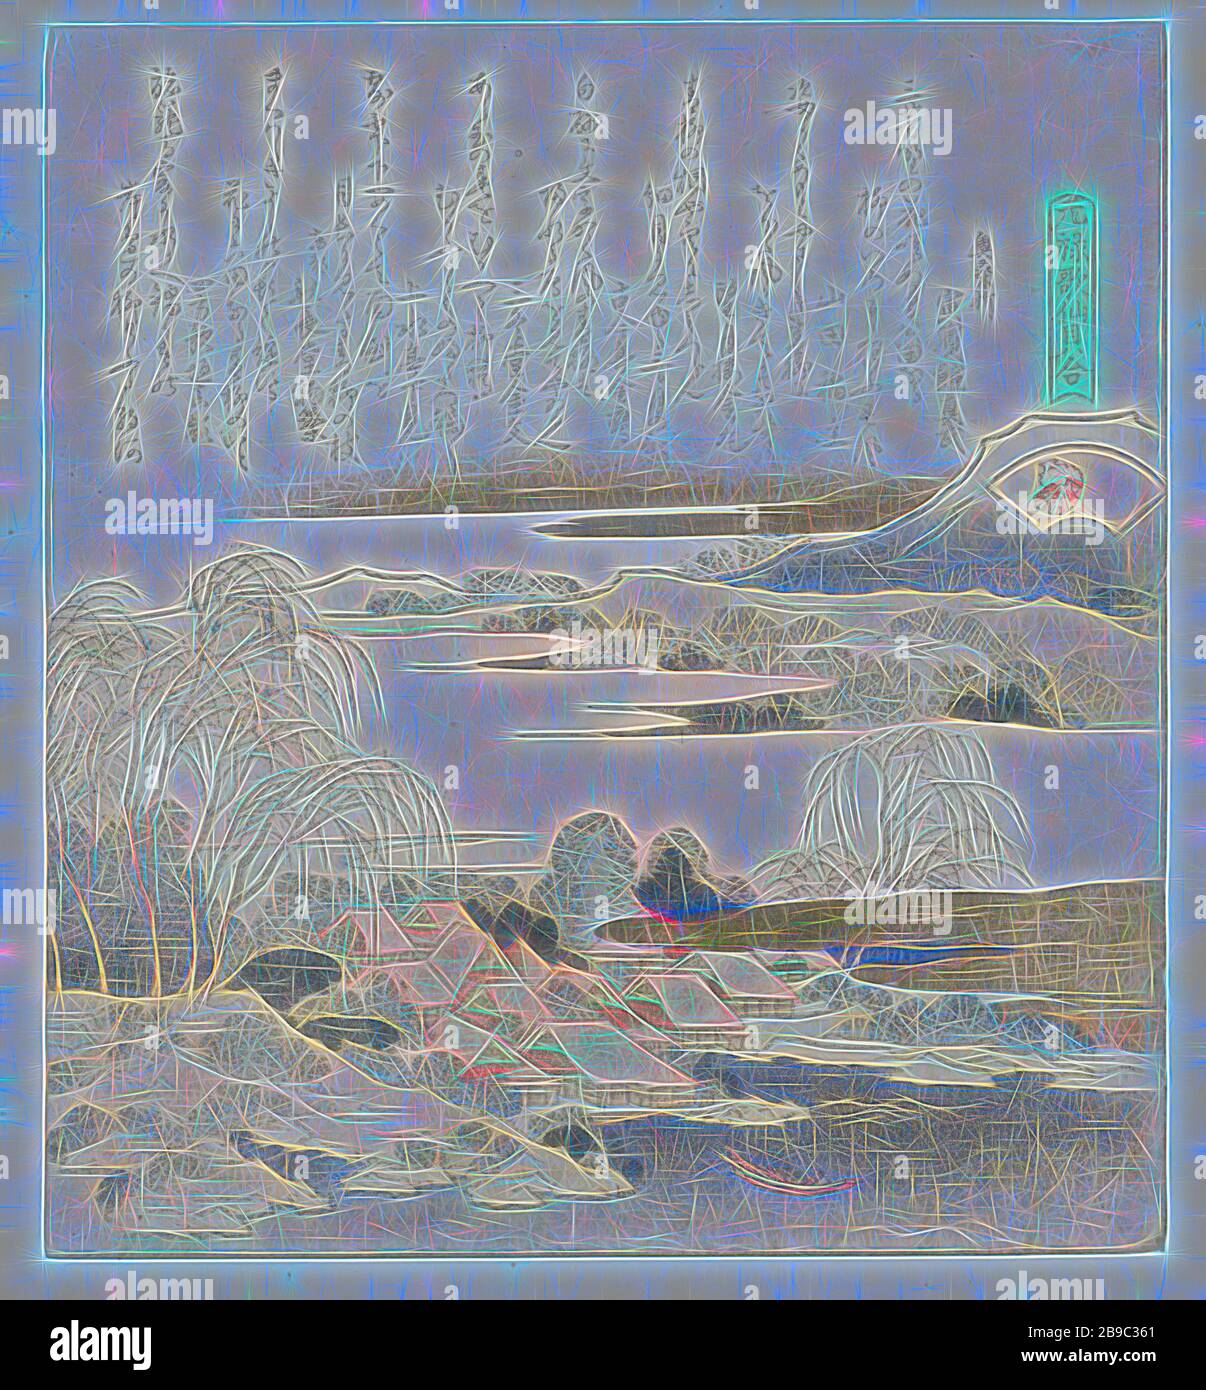 Brocade Shell Nishikigai (Titel auf Objekt) EIN Vergleich von Genroku-Gedichten und Muscheln (Serientitel) Genroku Kasen Kaiawase (Serientitel auf Objekt), das Dorf Mutsuda, berühmt für seine weinenden Weiden, am Ufer des Flusses Yoshino. Im Vordergrund eine Fähre, im Hintergrund ein Berg zwischen Nebelbänken. Mit acht Gedichten. Die Schale, auf die sich der Titel bezieht, ist in der fächerförmigen Kartusche dargestellt., Katsushika Hokusai (auf Objekt erwähnt), Japan, 181, Papier, Farbholzschnitt, h 196 mm × w 178 mm, von Gibon neu vorstellbar, Design von warmem, fröhlichem Leuchten von Helligkeit und Lichtstrahlen Radianc Stockfoto